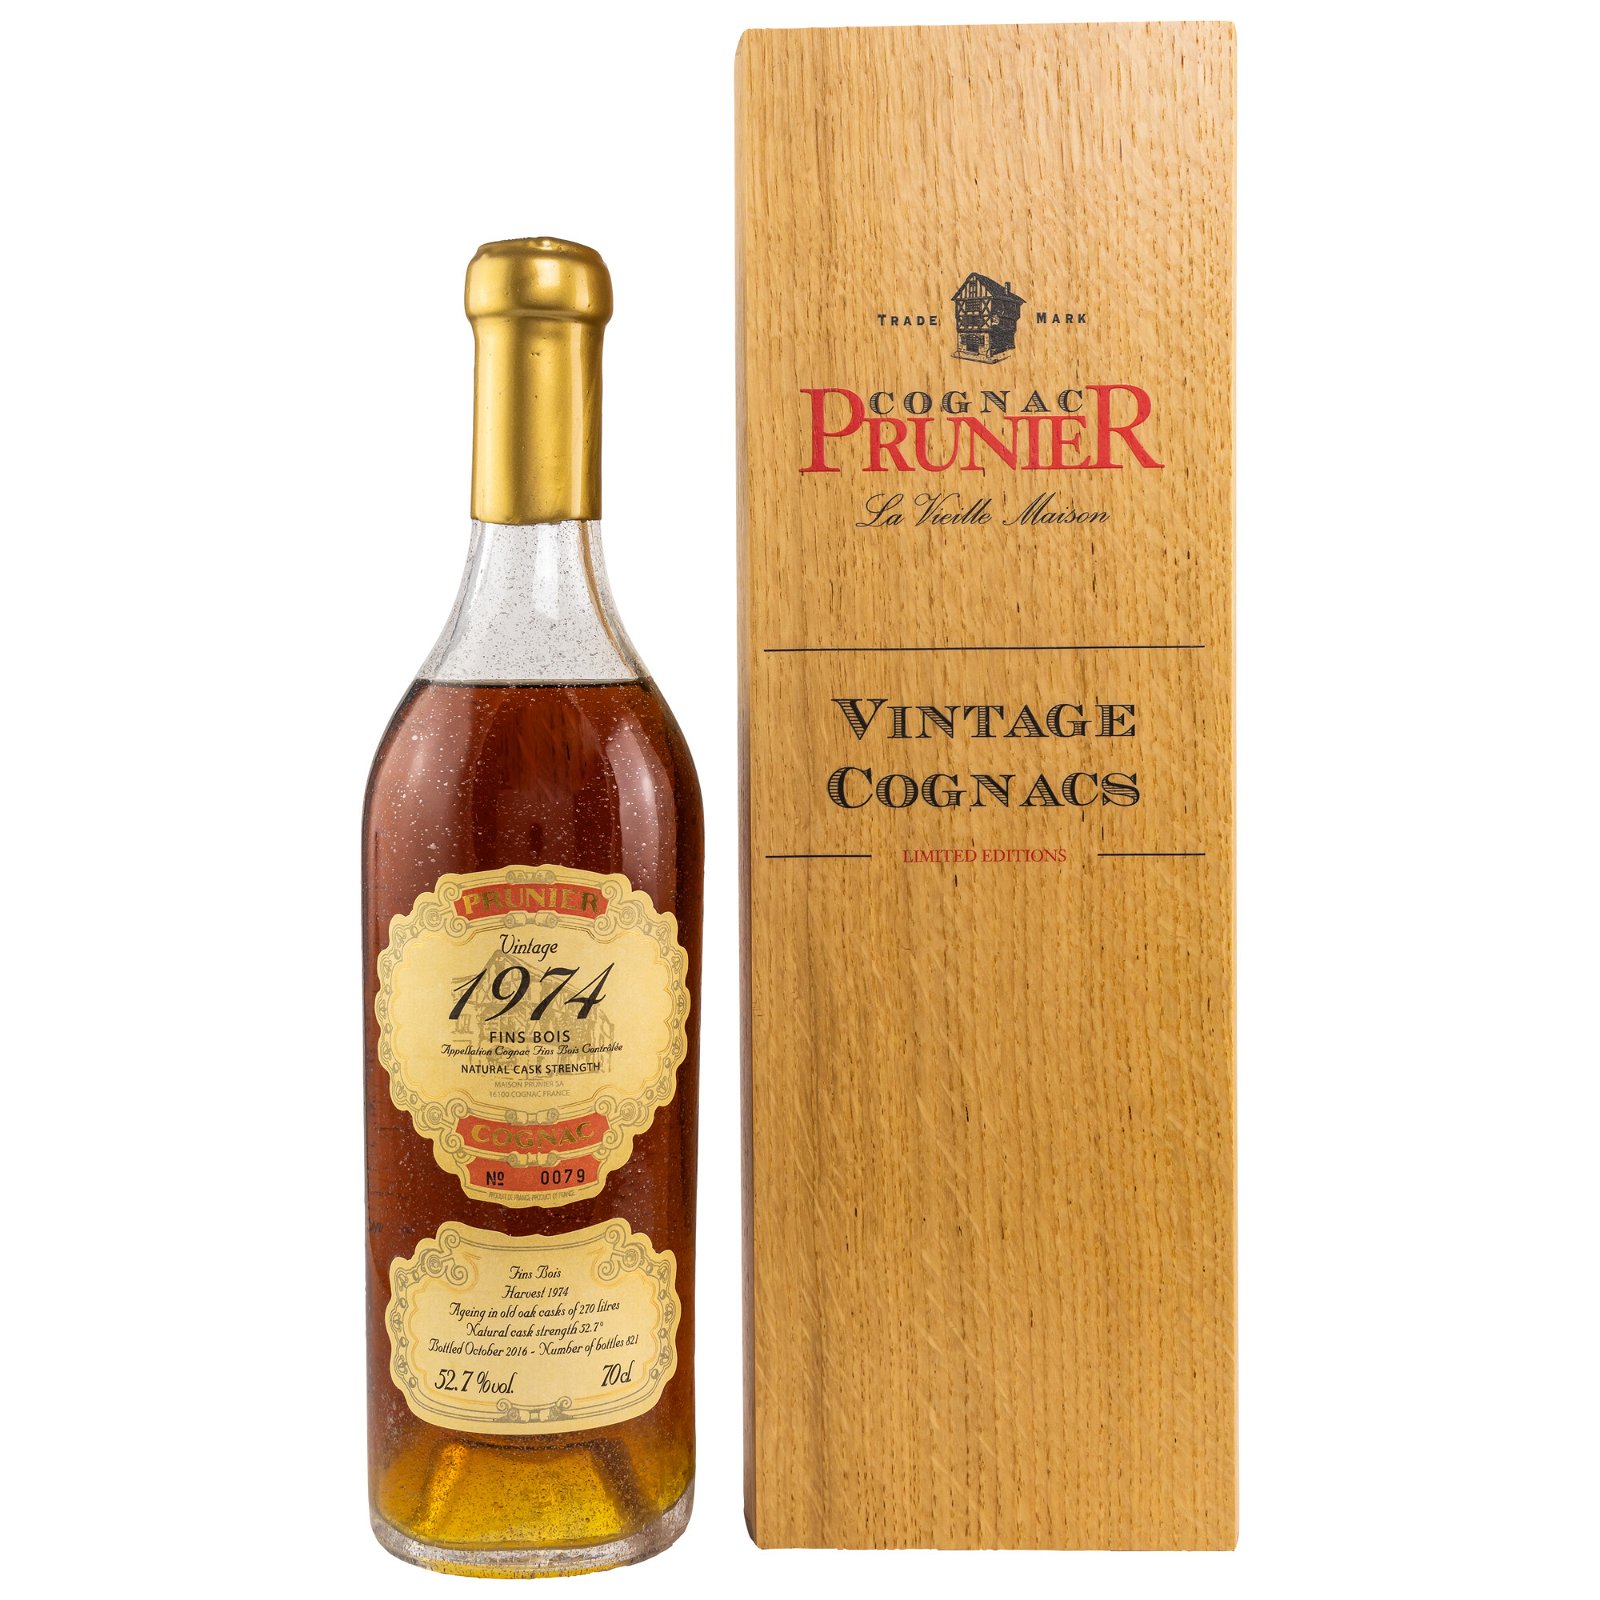 Prunier 1974/2016 Fins Bois Cognac (Vintage Cognacs)